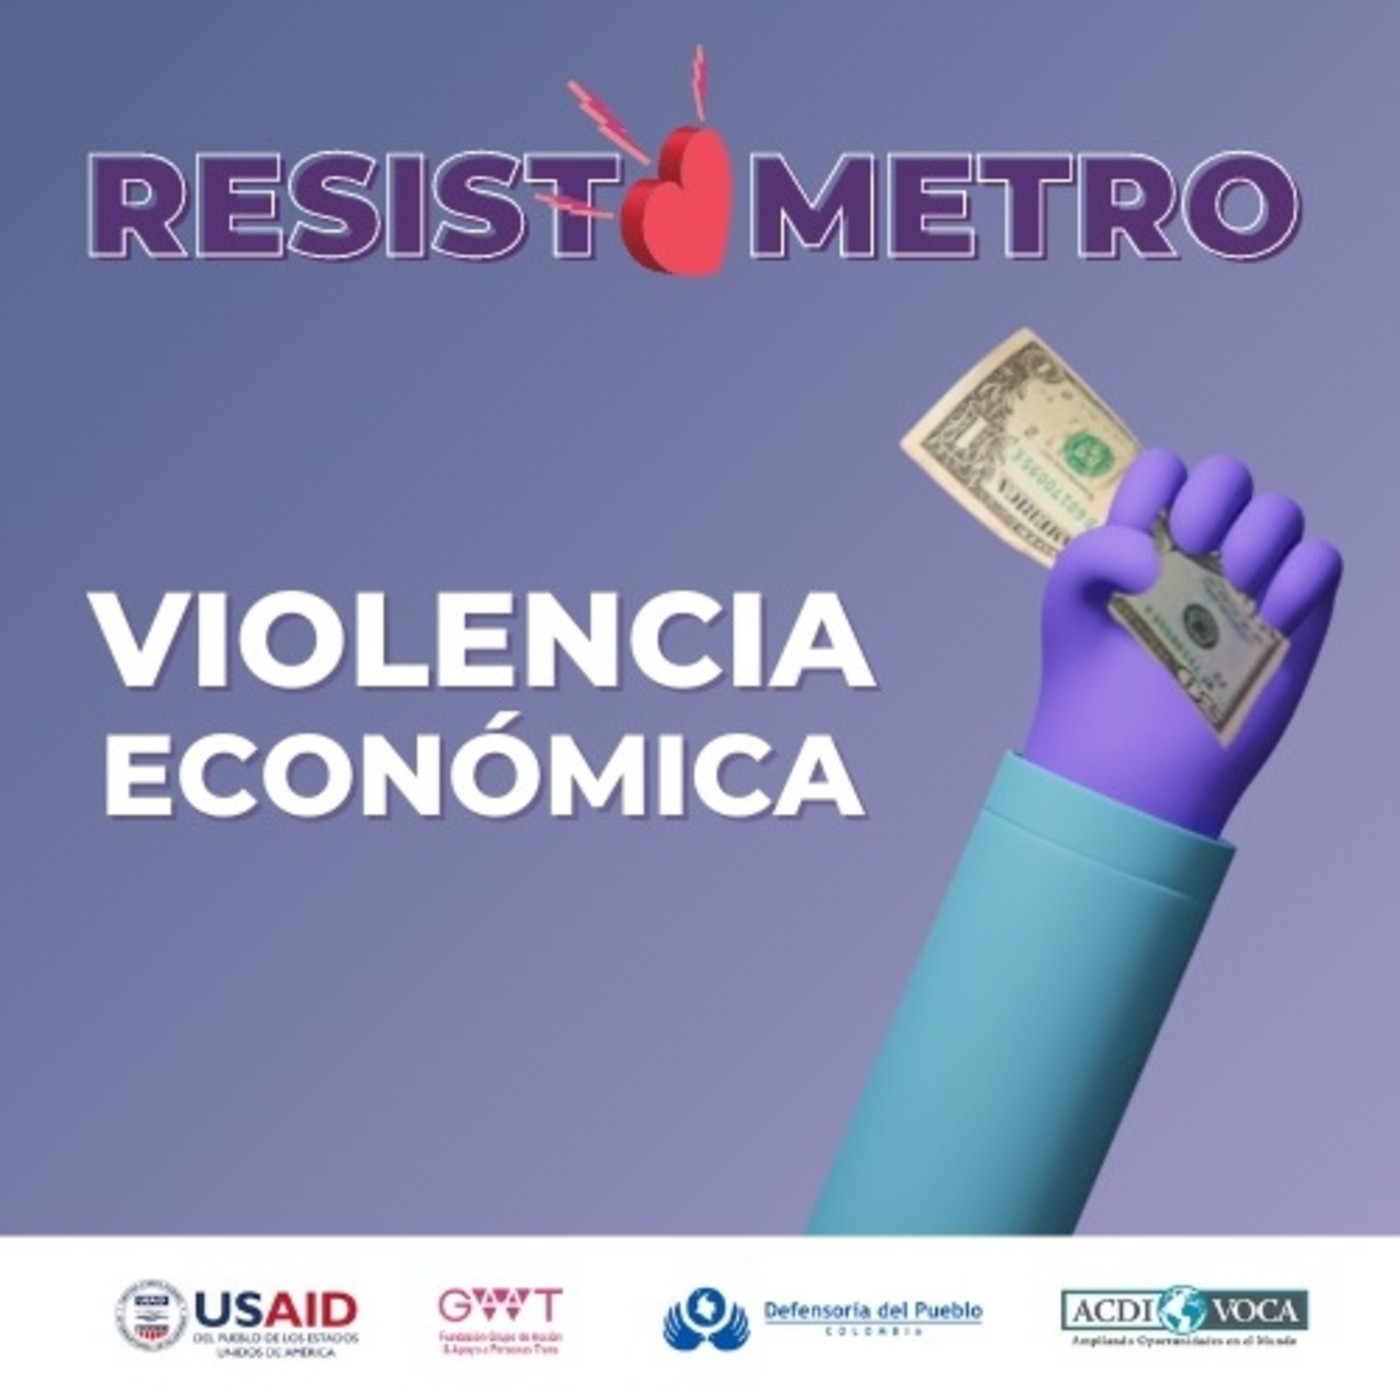 #5: Resistómetro: Violencia Económica